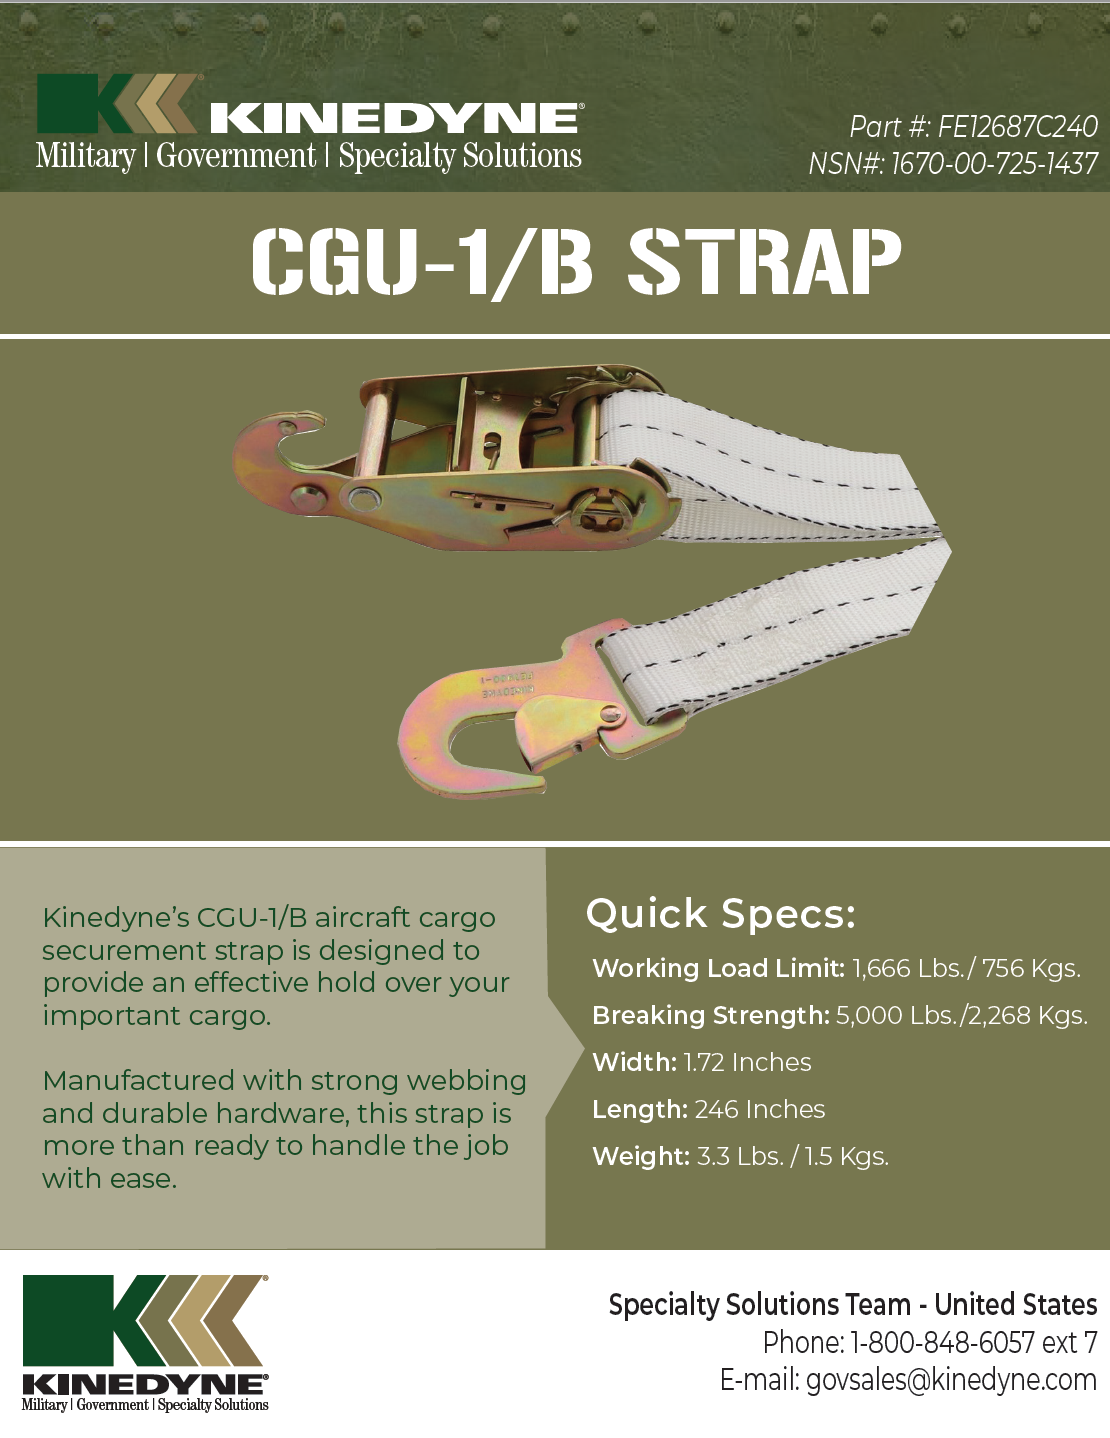 Kinedyne CGU-1/B Strap